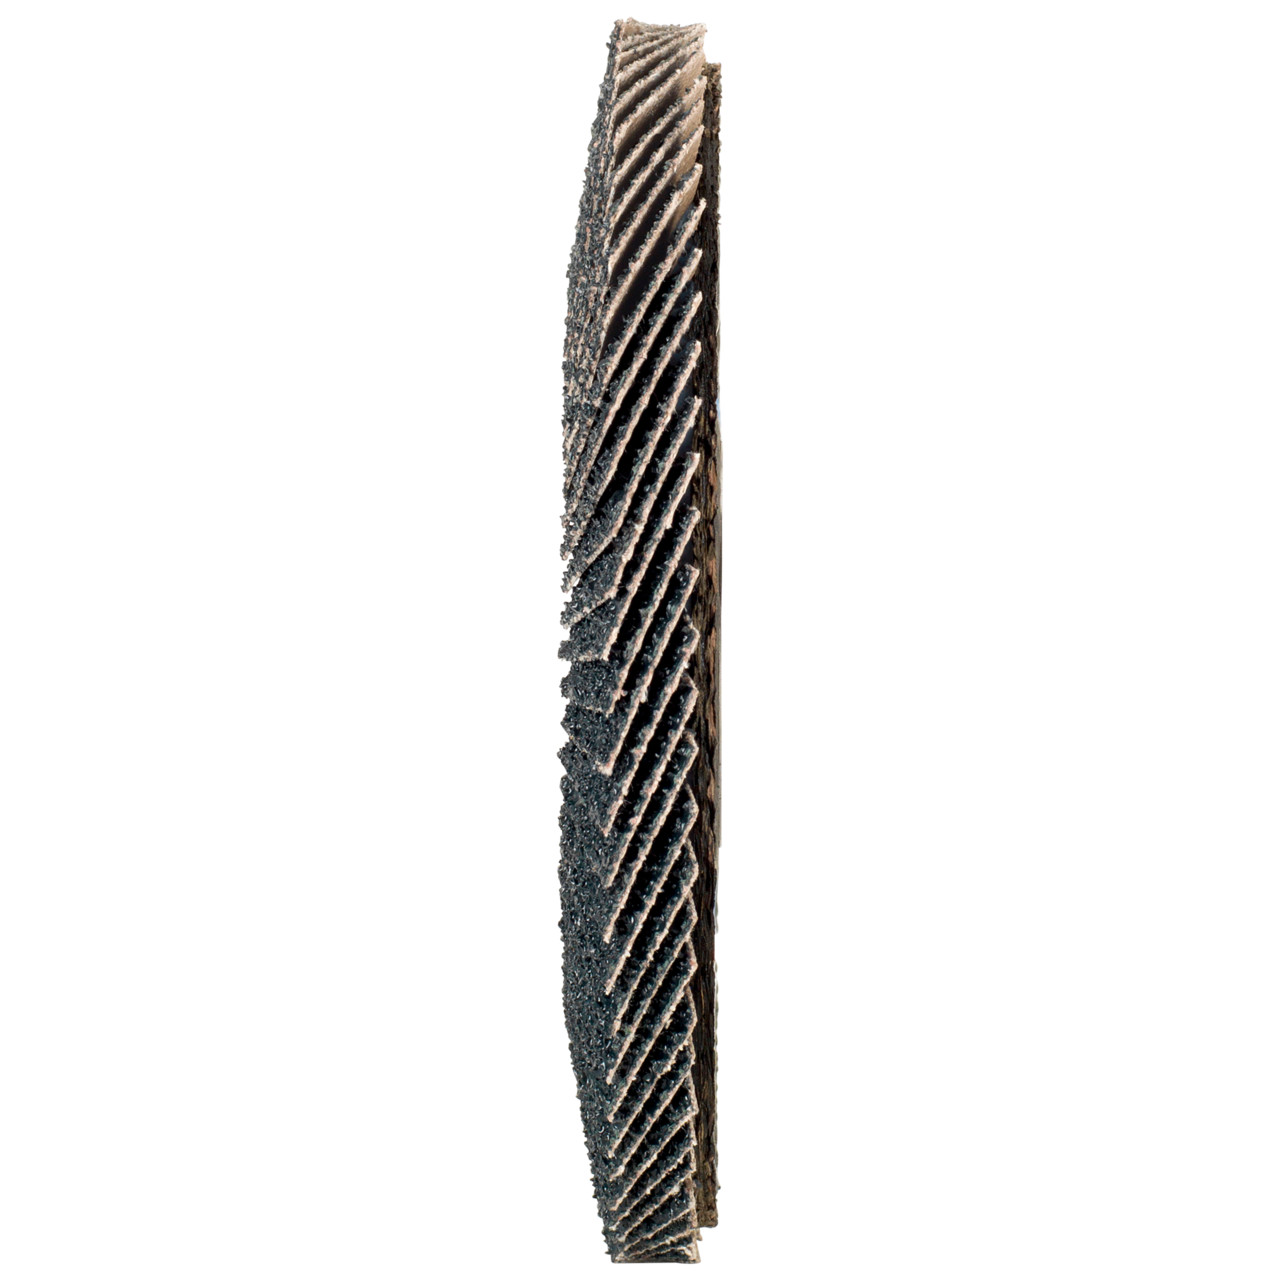 Tyrolit Arandela dentada DxH 125x22,2 2en1 para acero y acero inoxidable, P120, forma: 28A - versión recta (versión con cuerpo de soporte de fibra de vidrio), Art. 645145